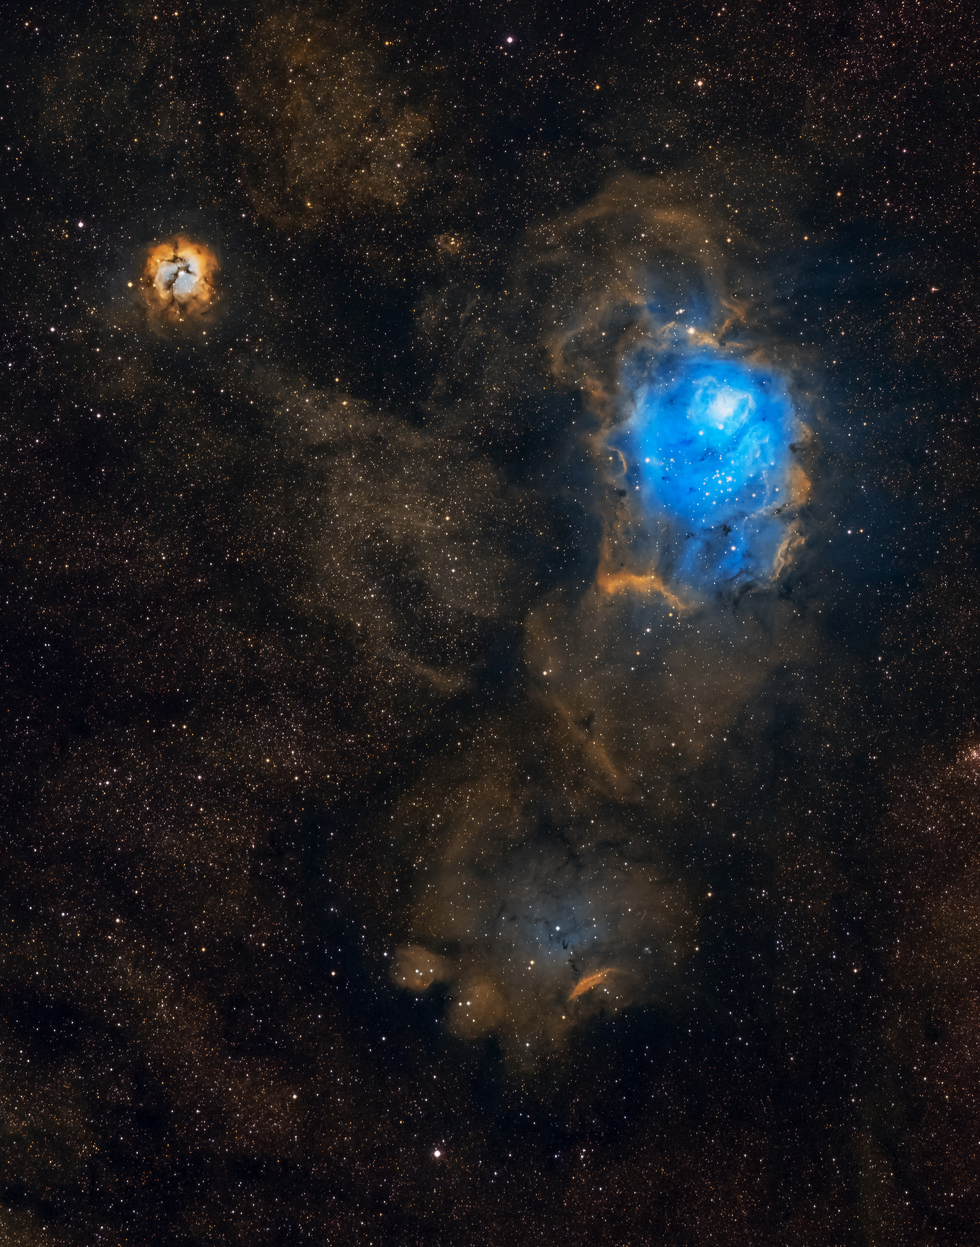 Trifid and Lagoon Nebula